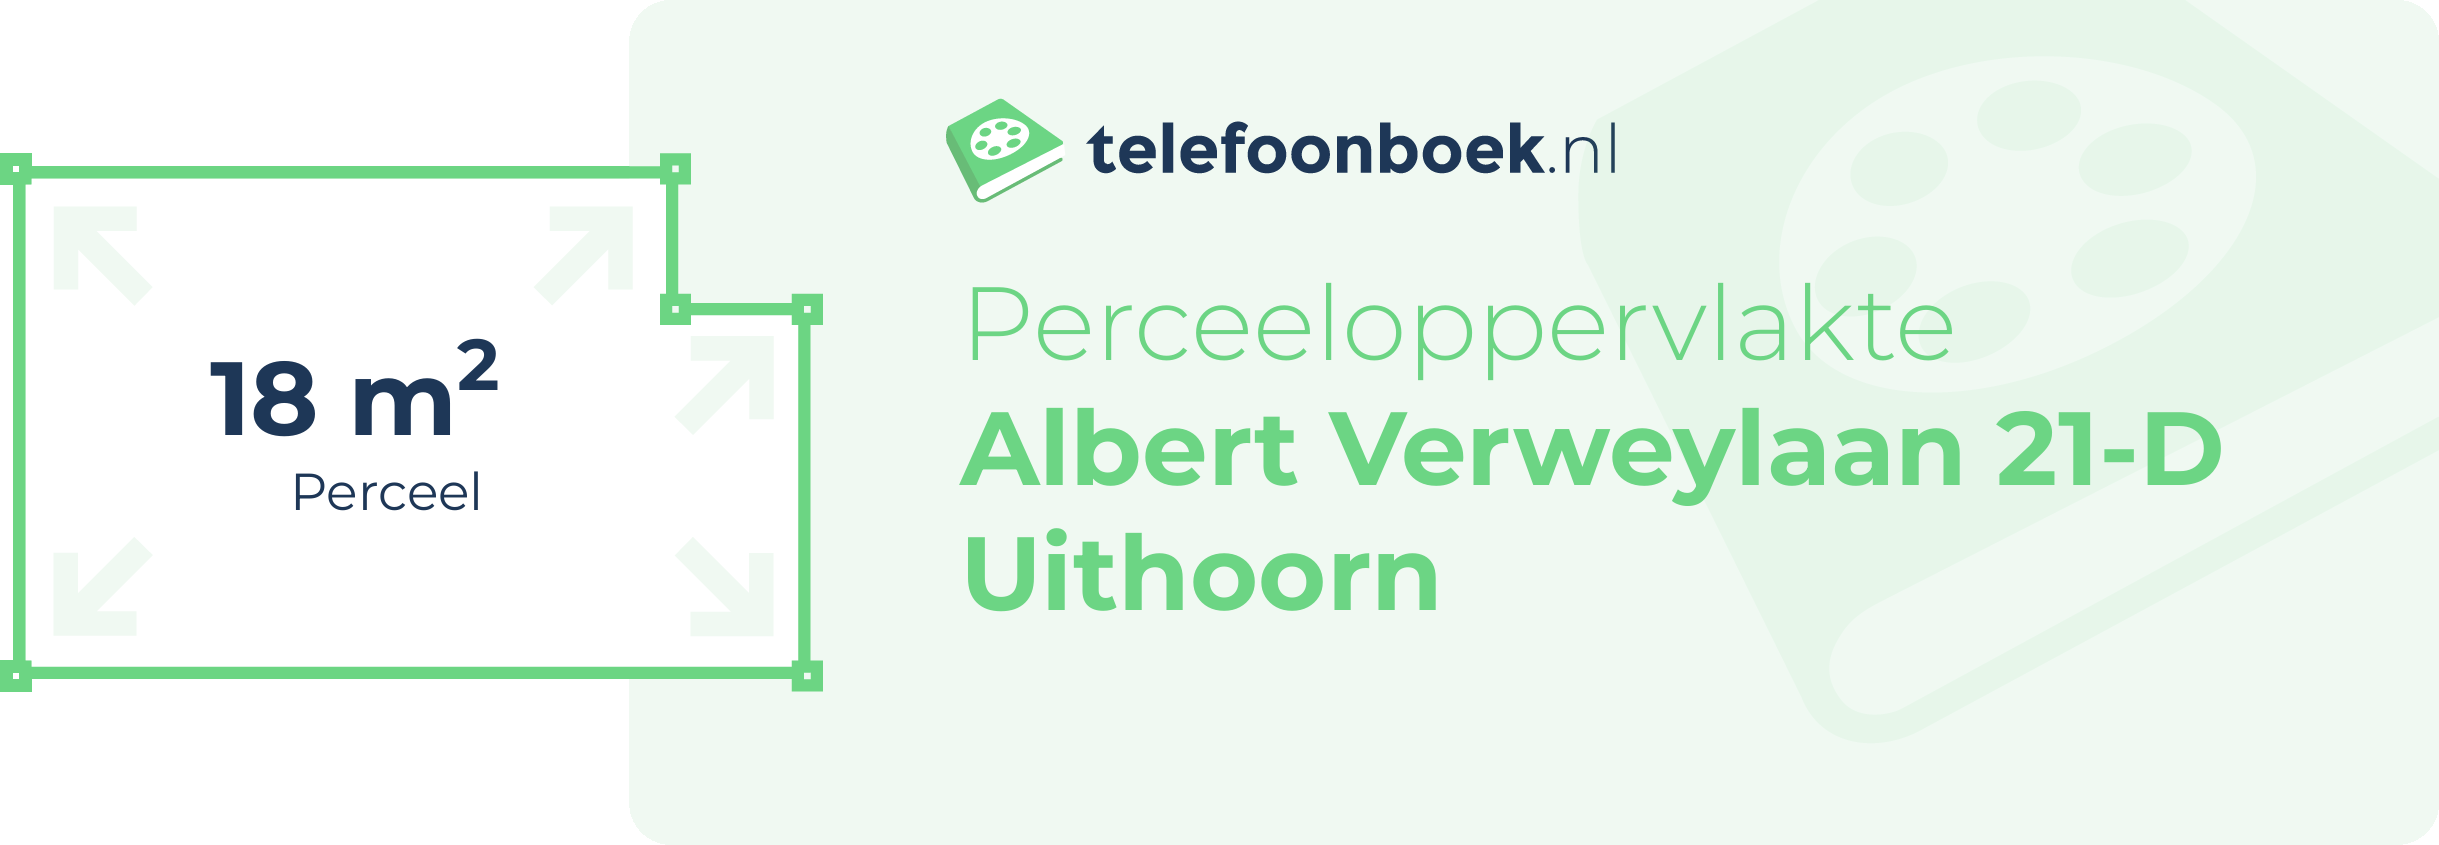 Perceeloppervlakte Albert Verweylaan 21-D Uithoorn